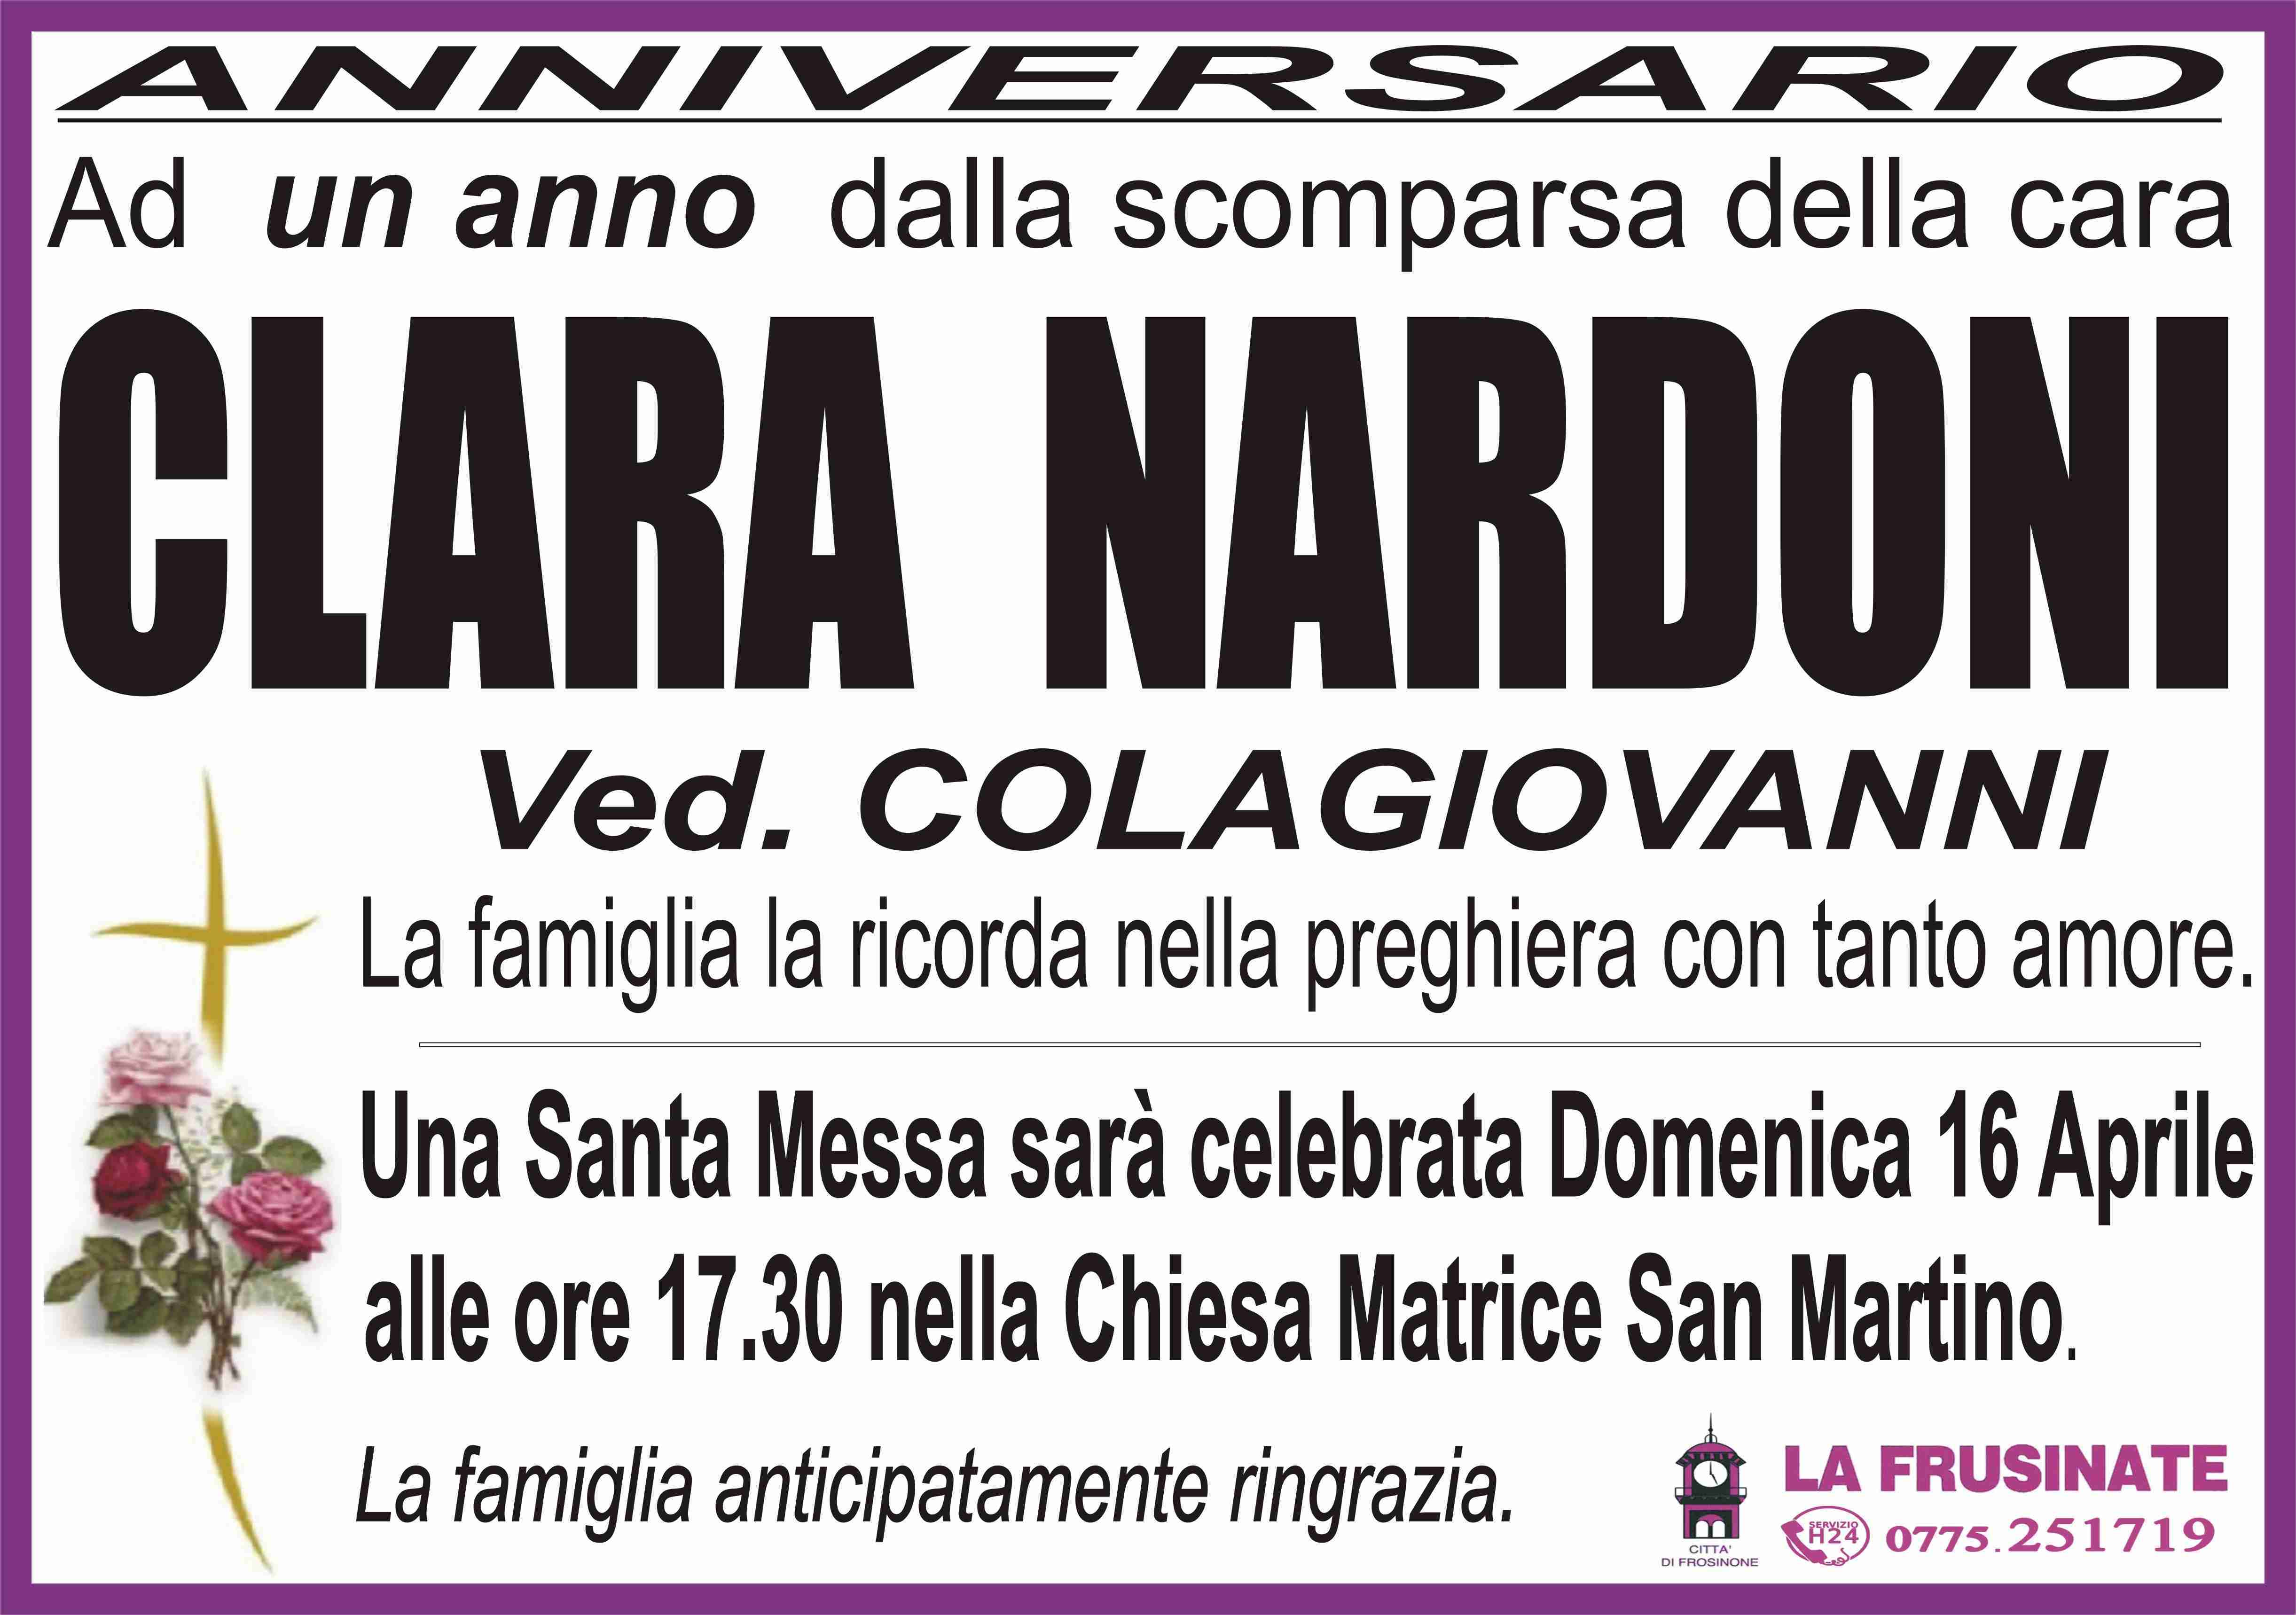 Clara Nardoni